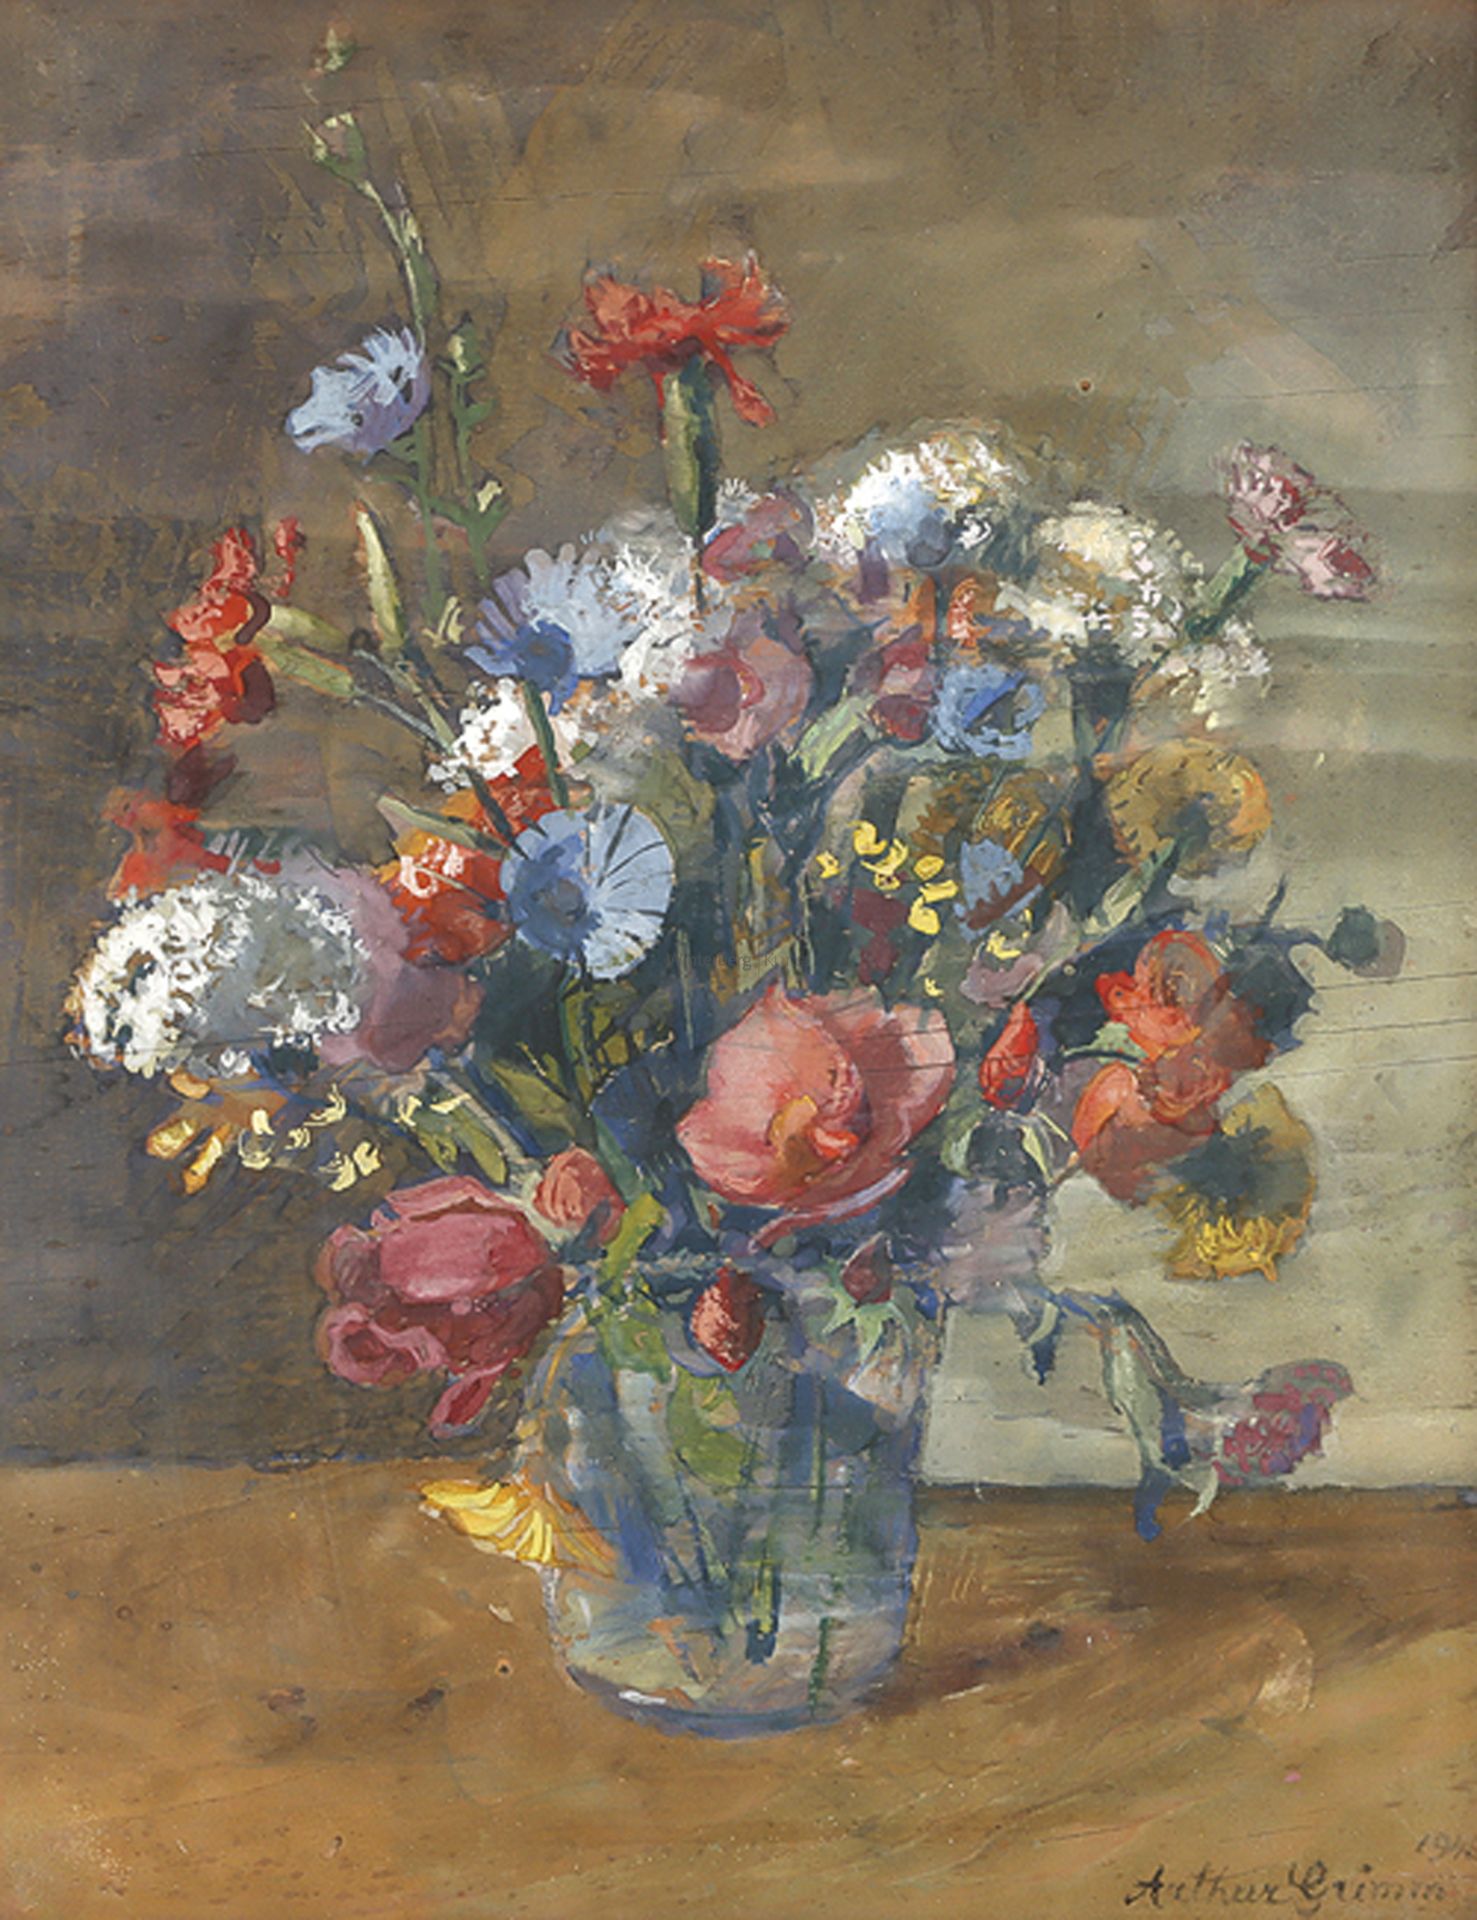 ARTHUR GRIMM: Blumenstrauß in Glasvase.